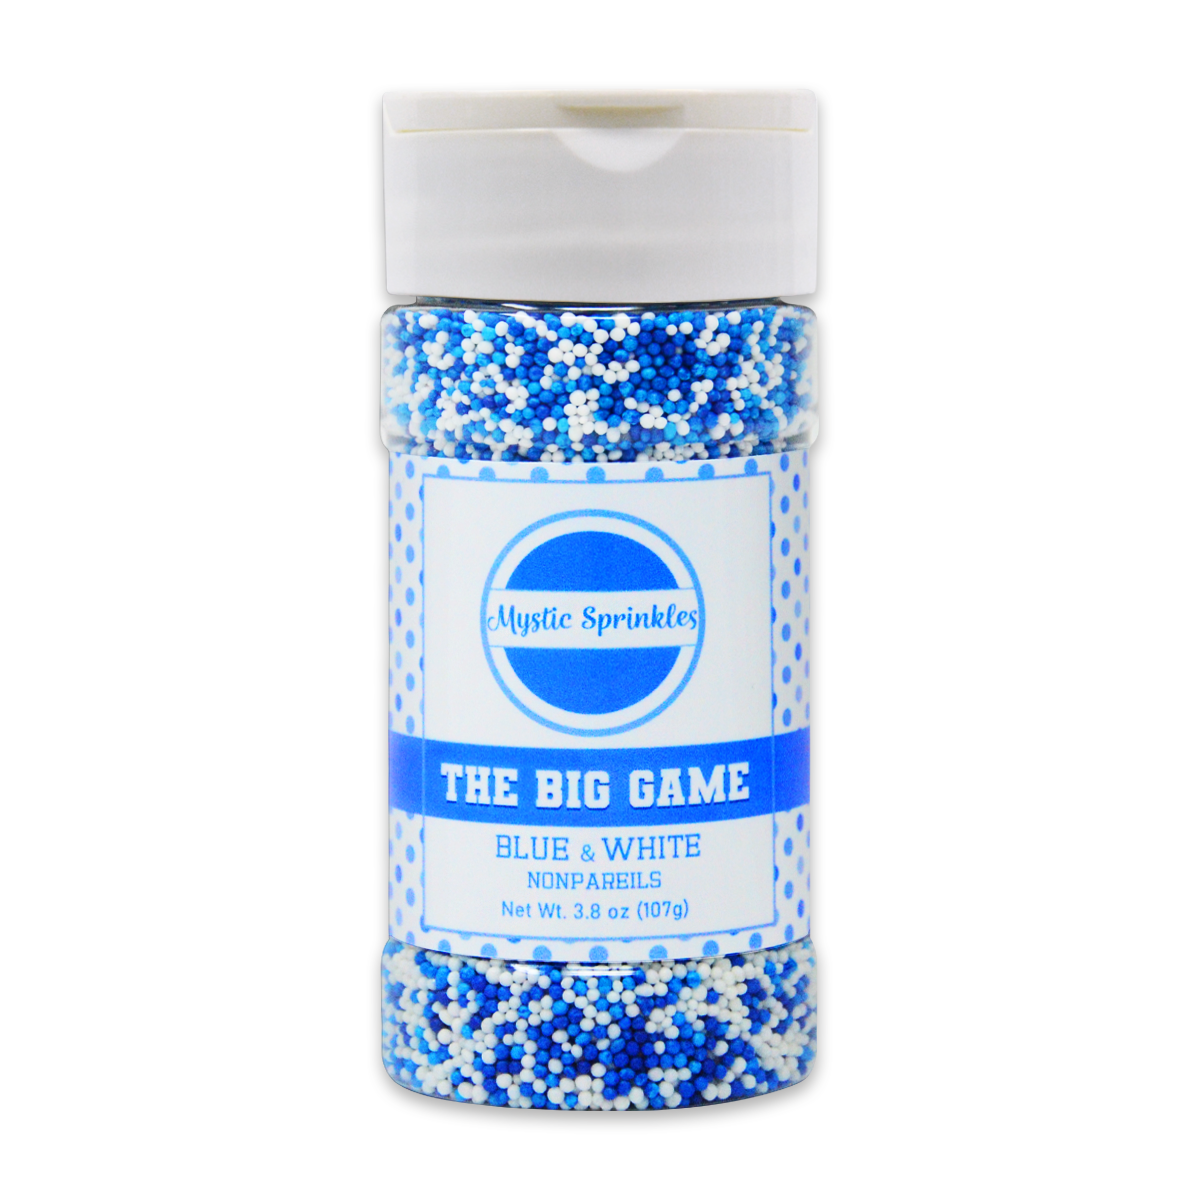 The Big Game: Blue & White Nonpareil Mix 3.8oz